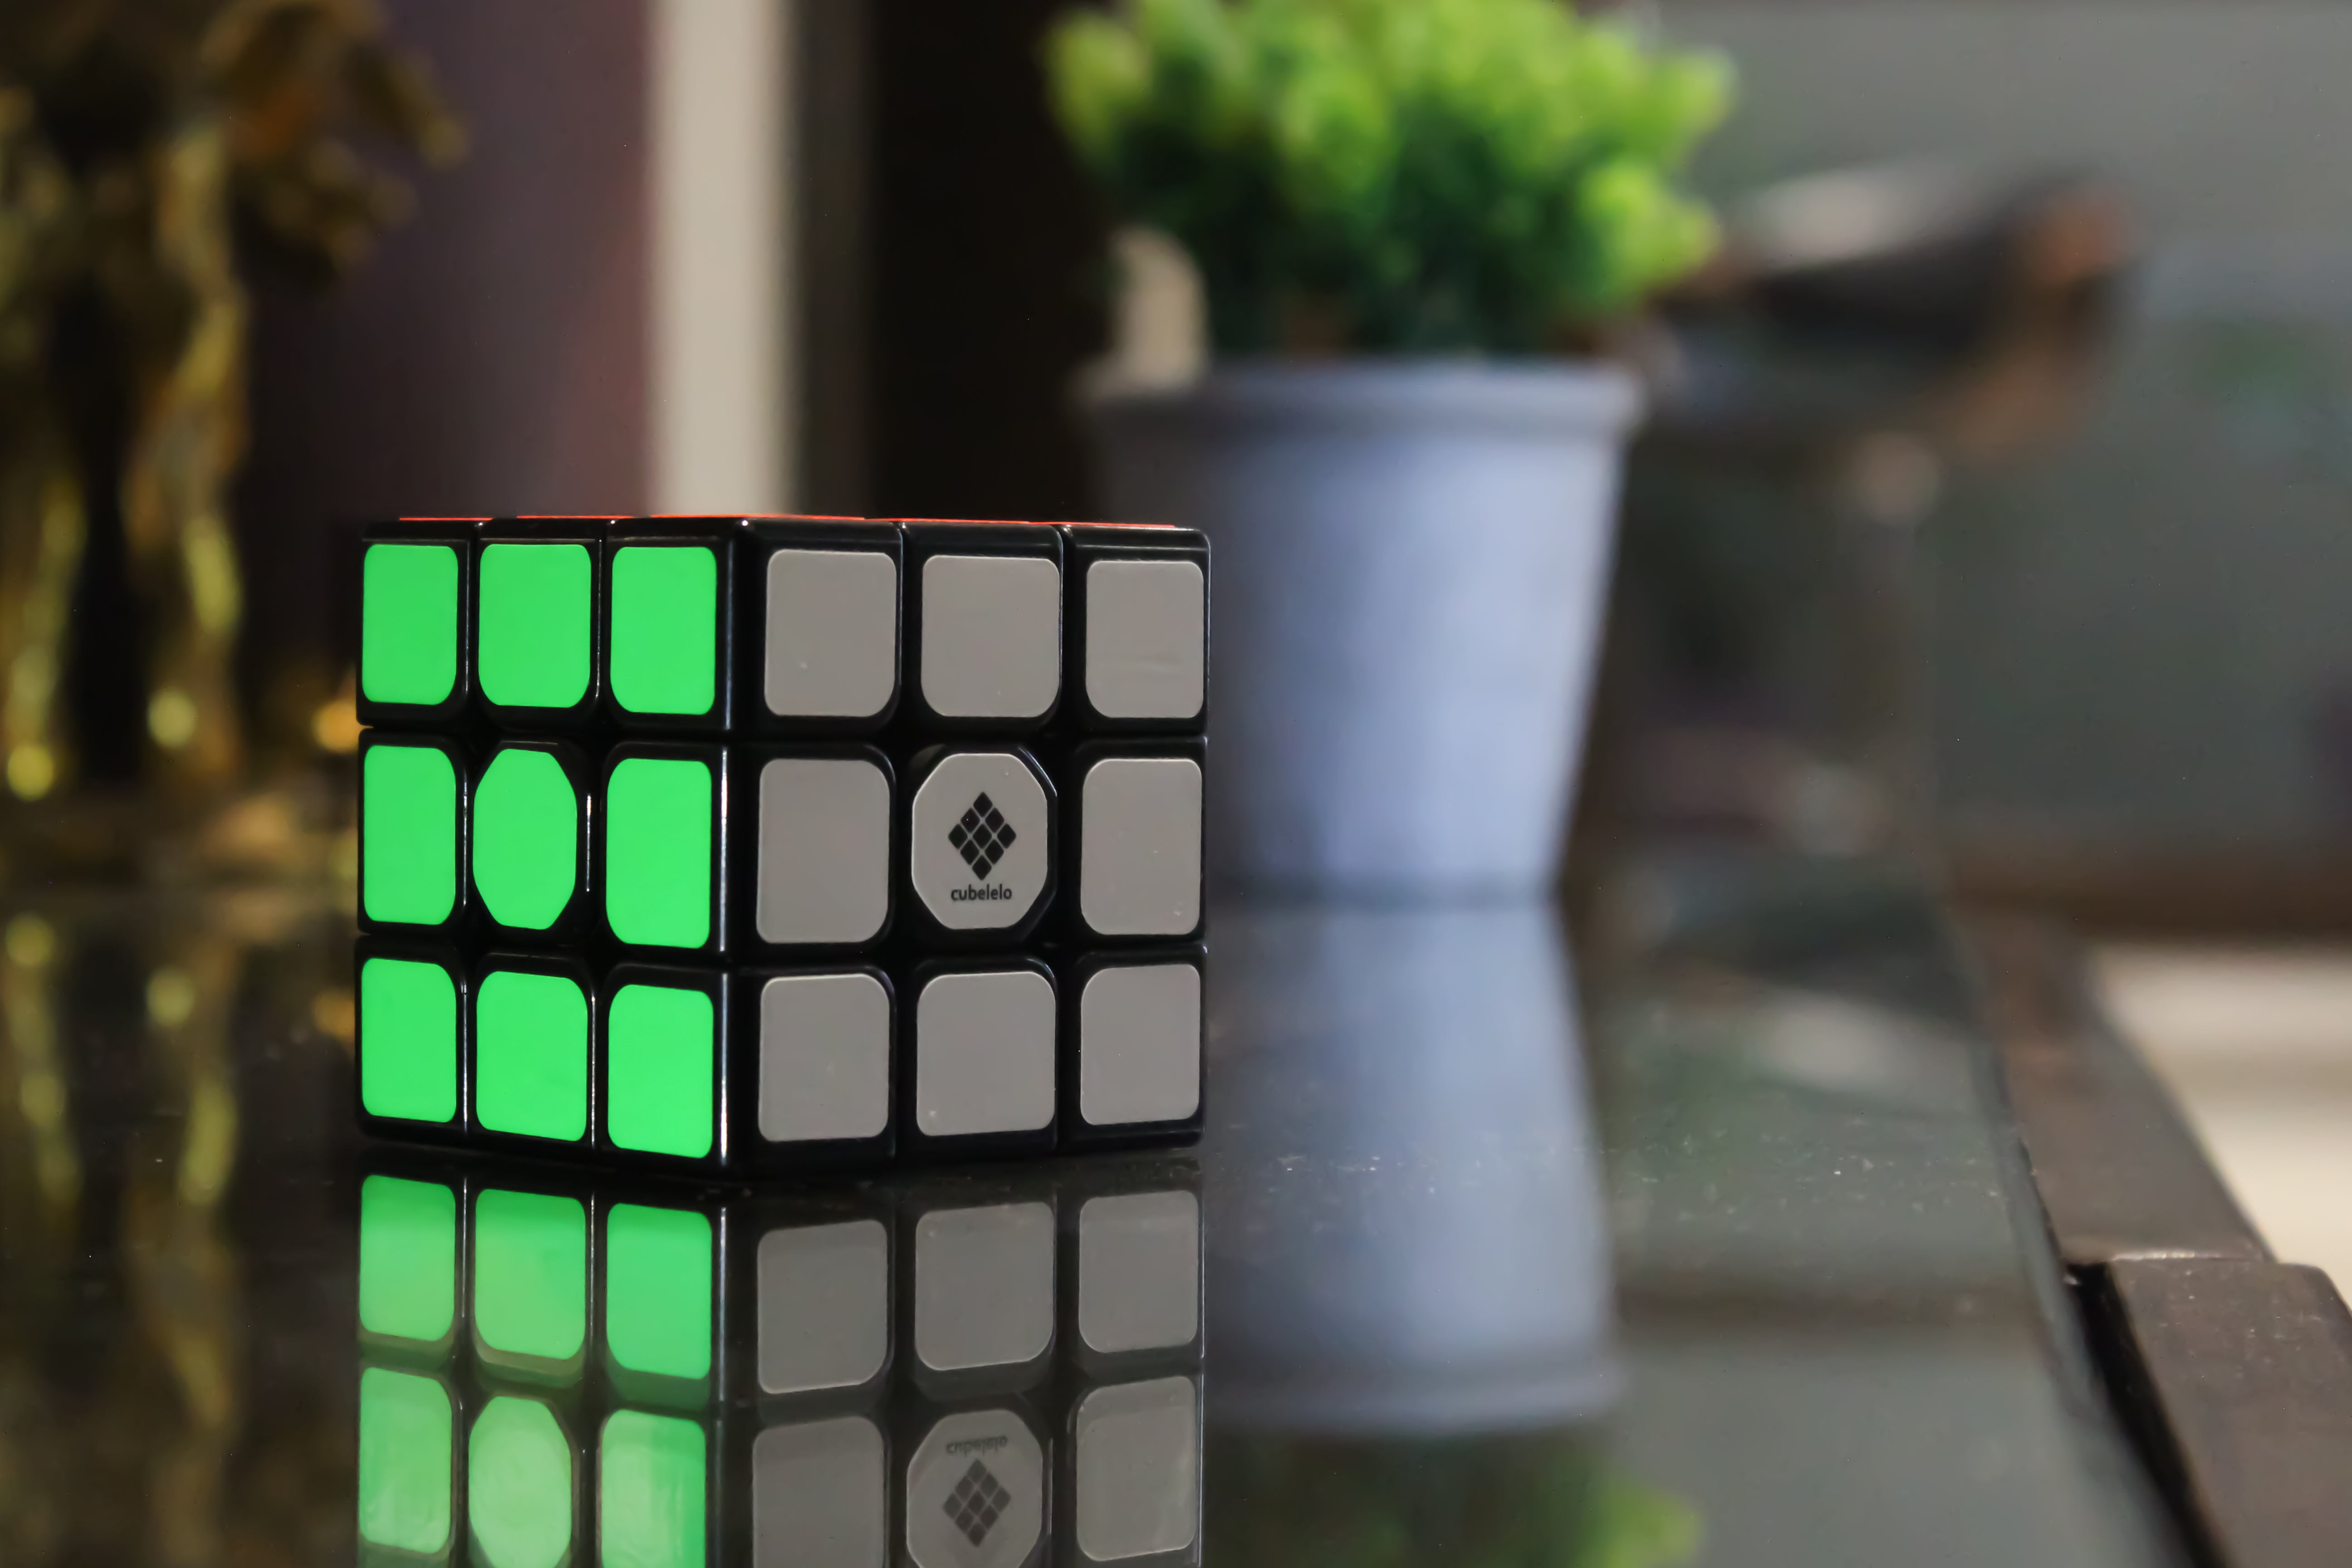 Rubiks kub 3x3, från 10 år